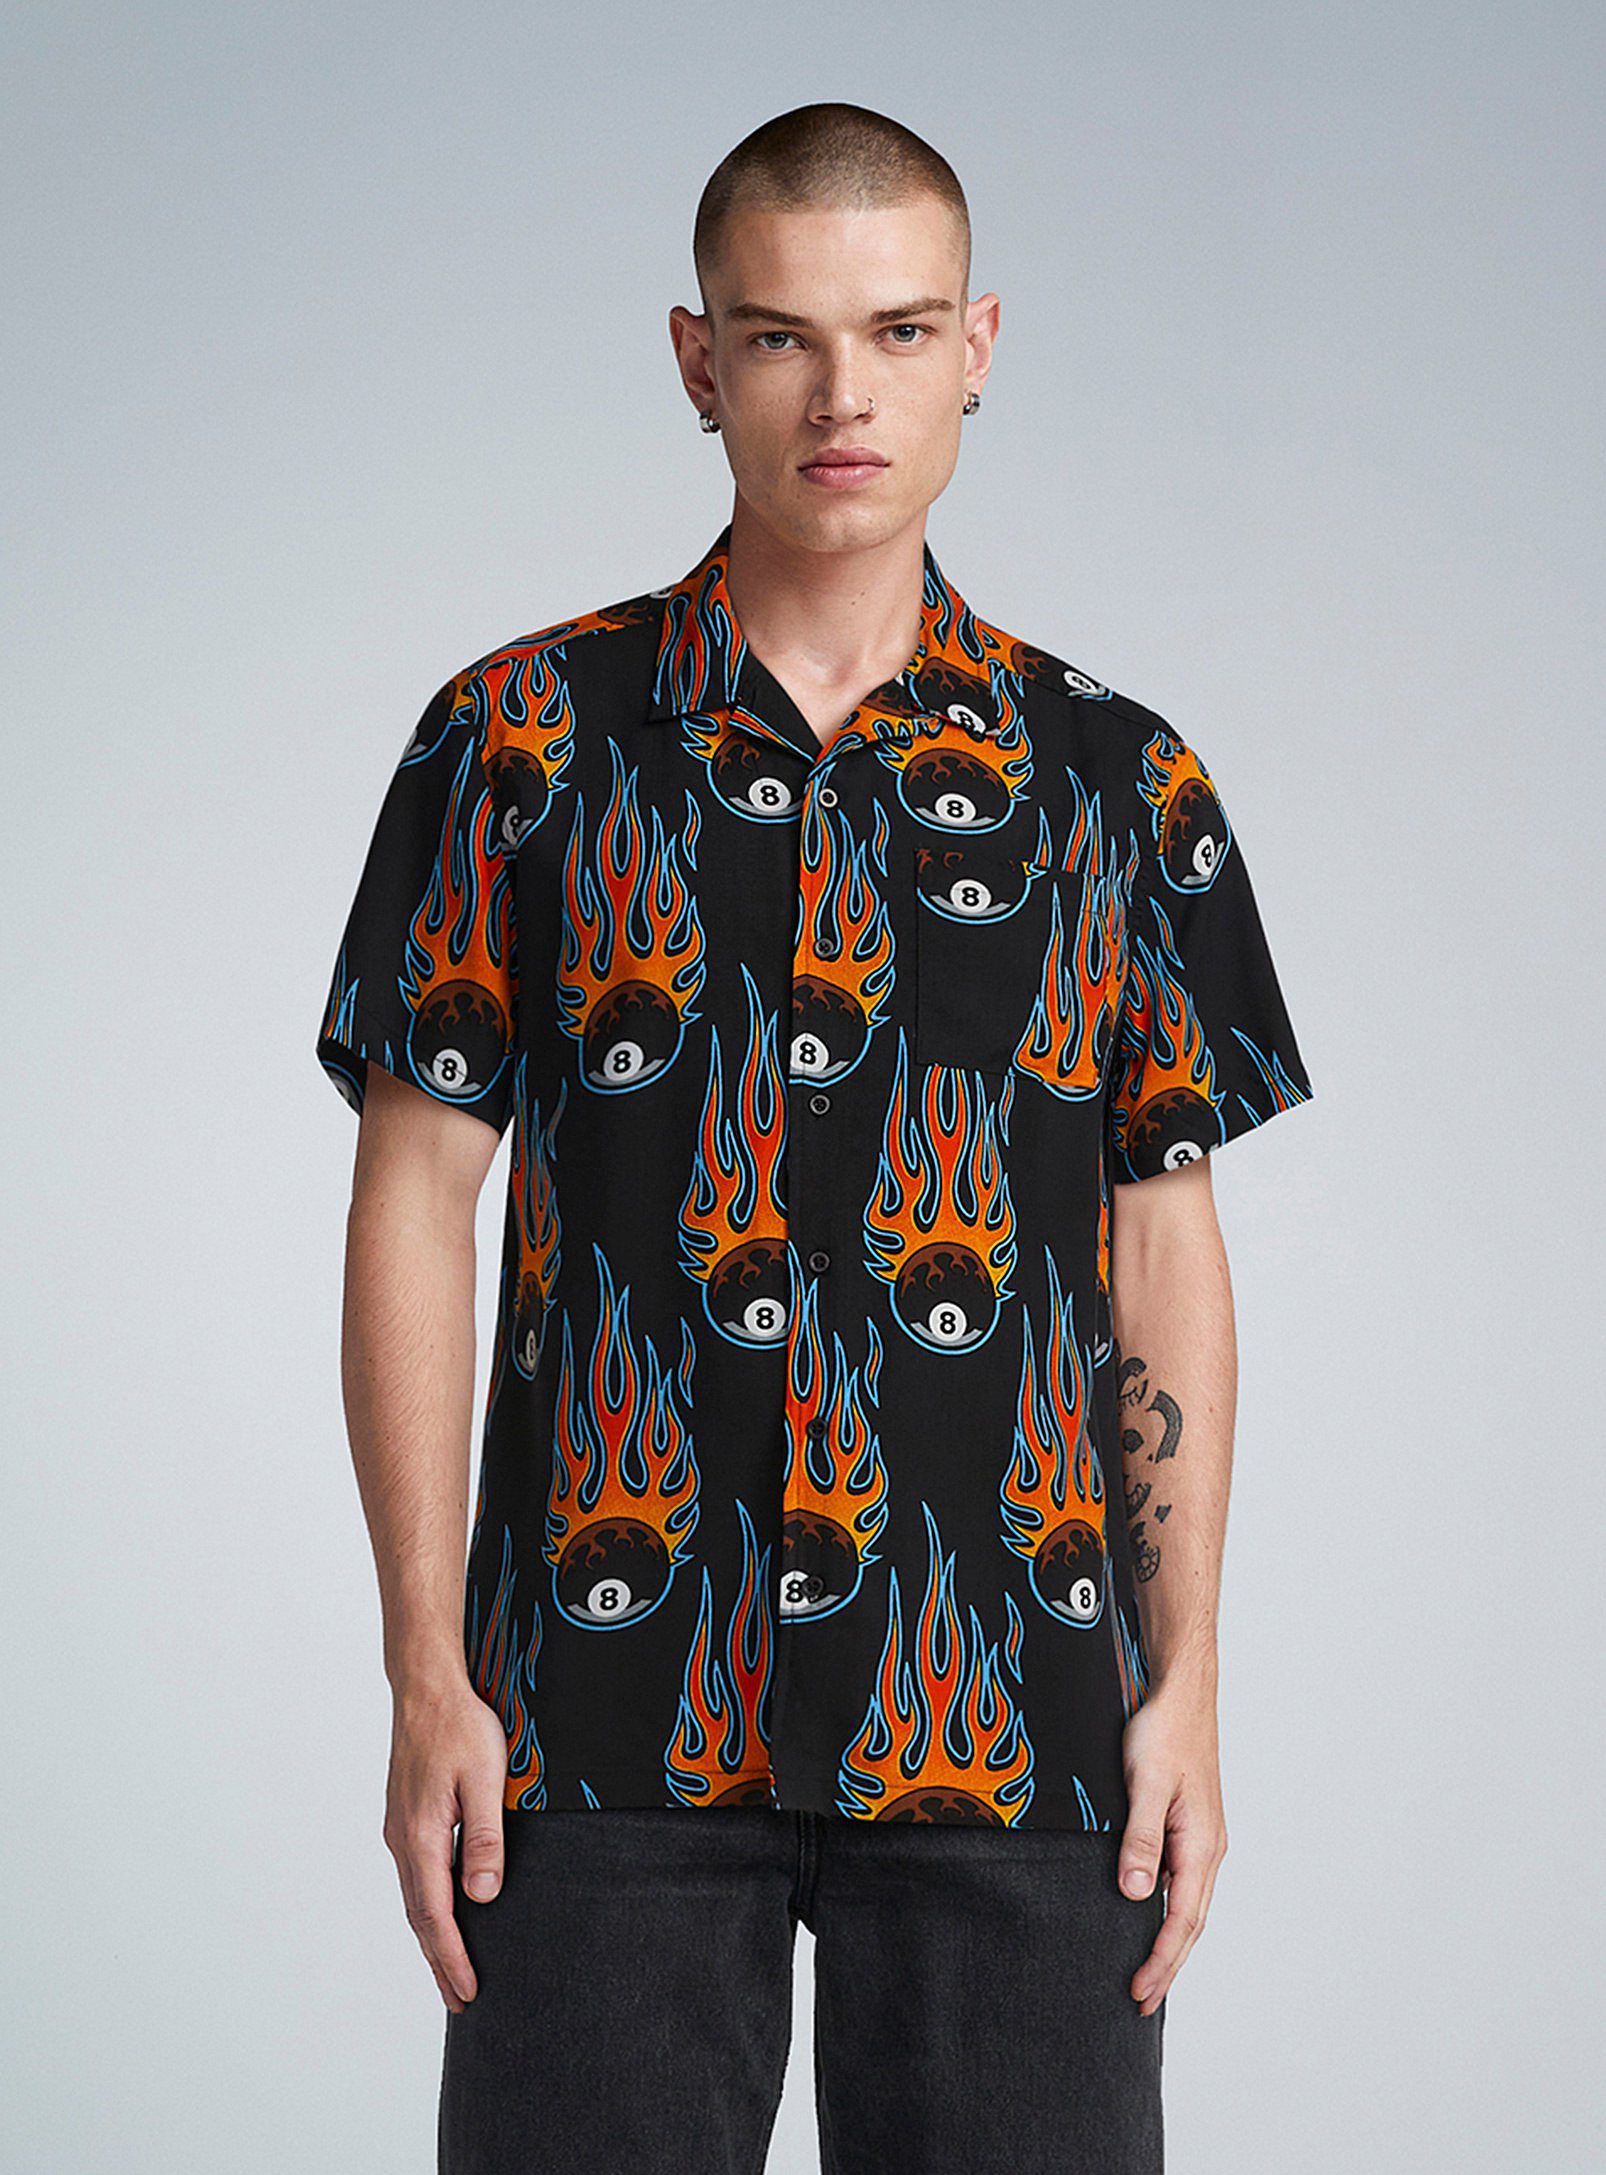 Djab - Men's Flaming billiard ball camp shirt